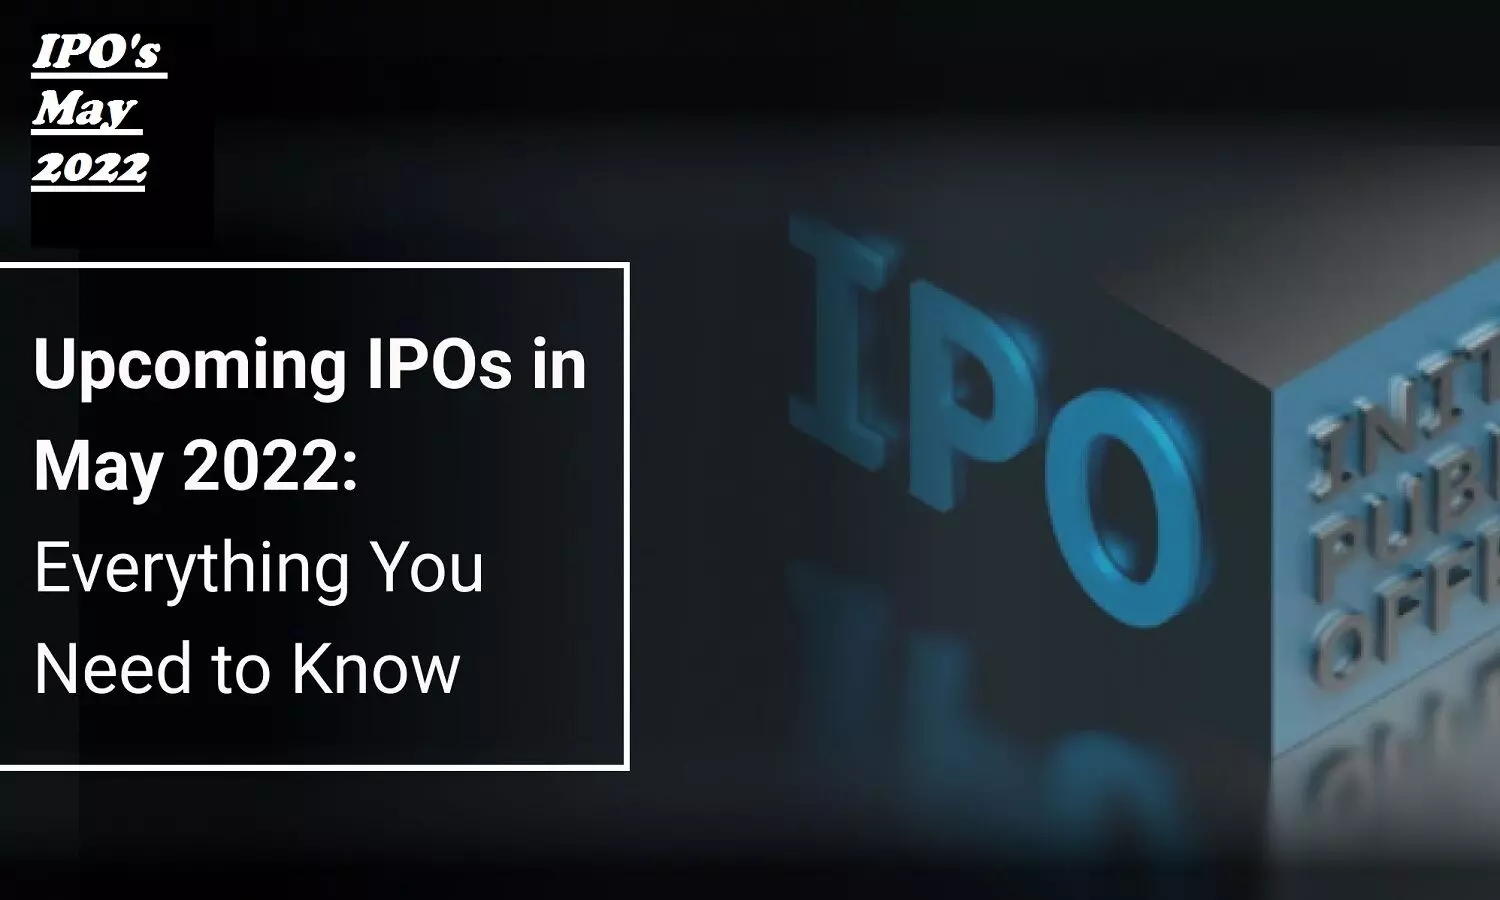 Upcoming IPOs In May 2022: LIC IPO न  मिलने से उदास मत होइए, अगले हफ्ते 3 नए IPO खुलेंगे